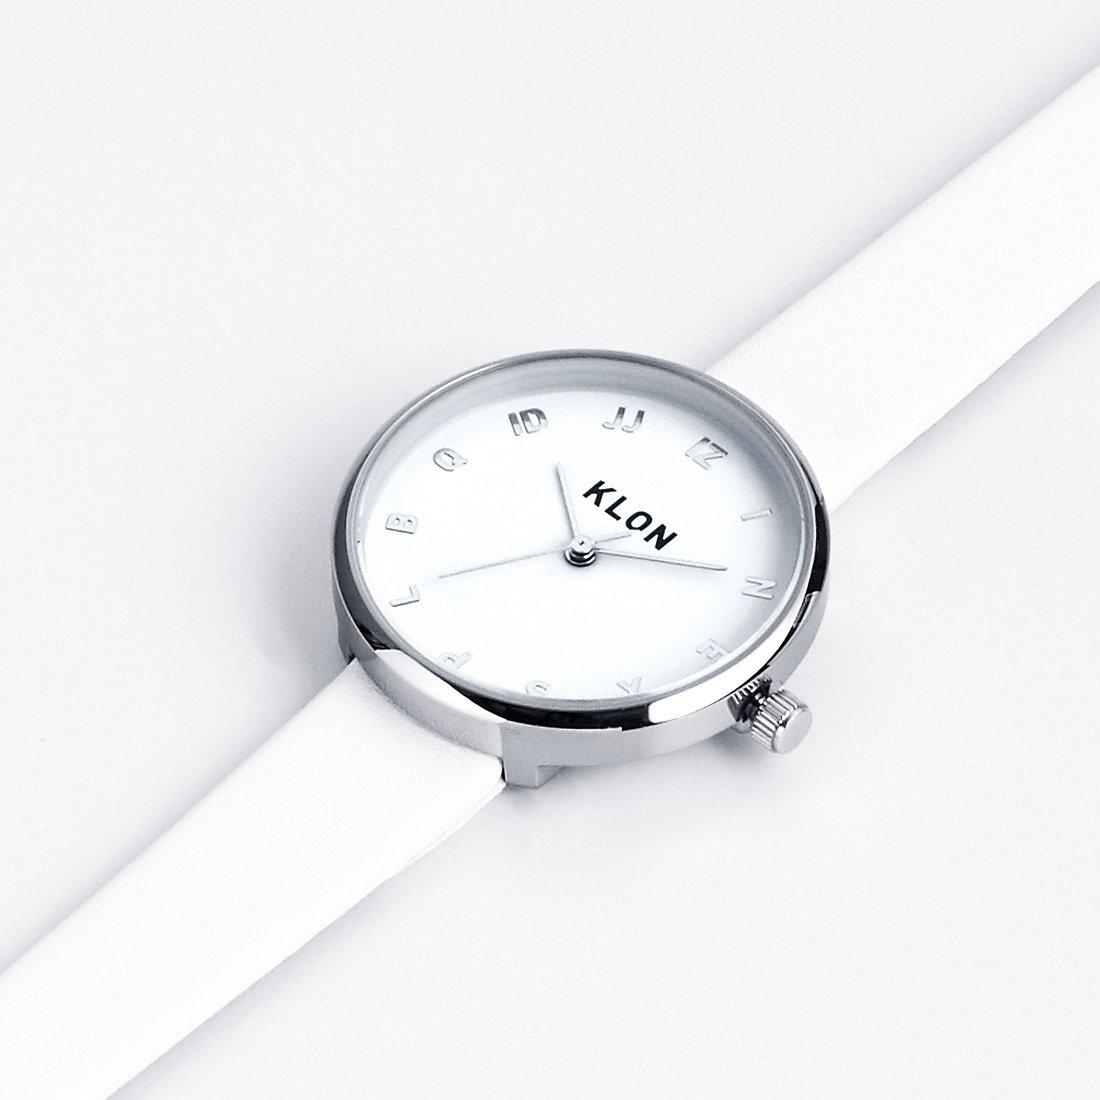 【組合せ商品】KLON MOCK NUMBER Ver.SILVER 33mm(BLACK×WHITE) カジュアル 腕時計